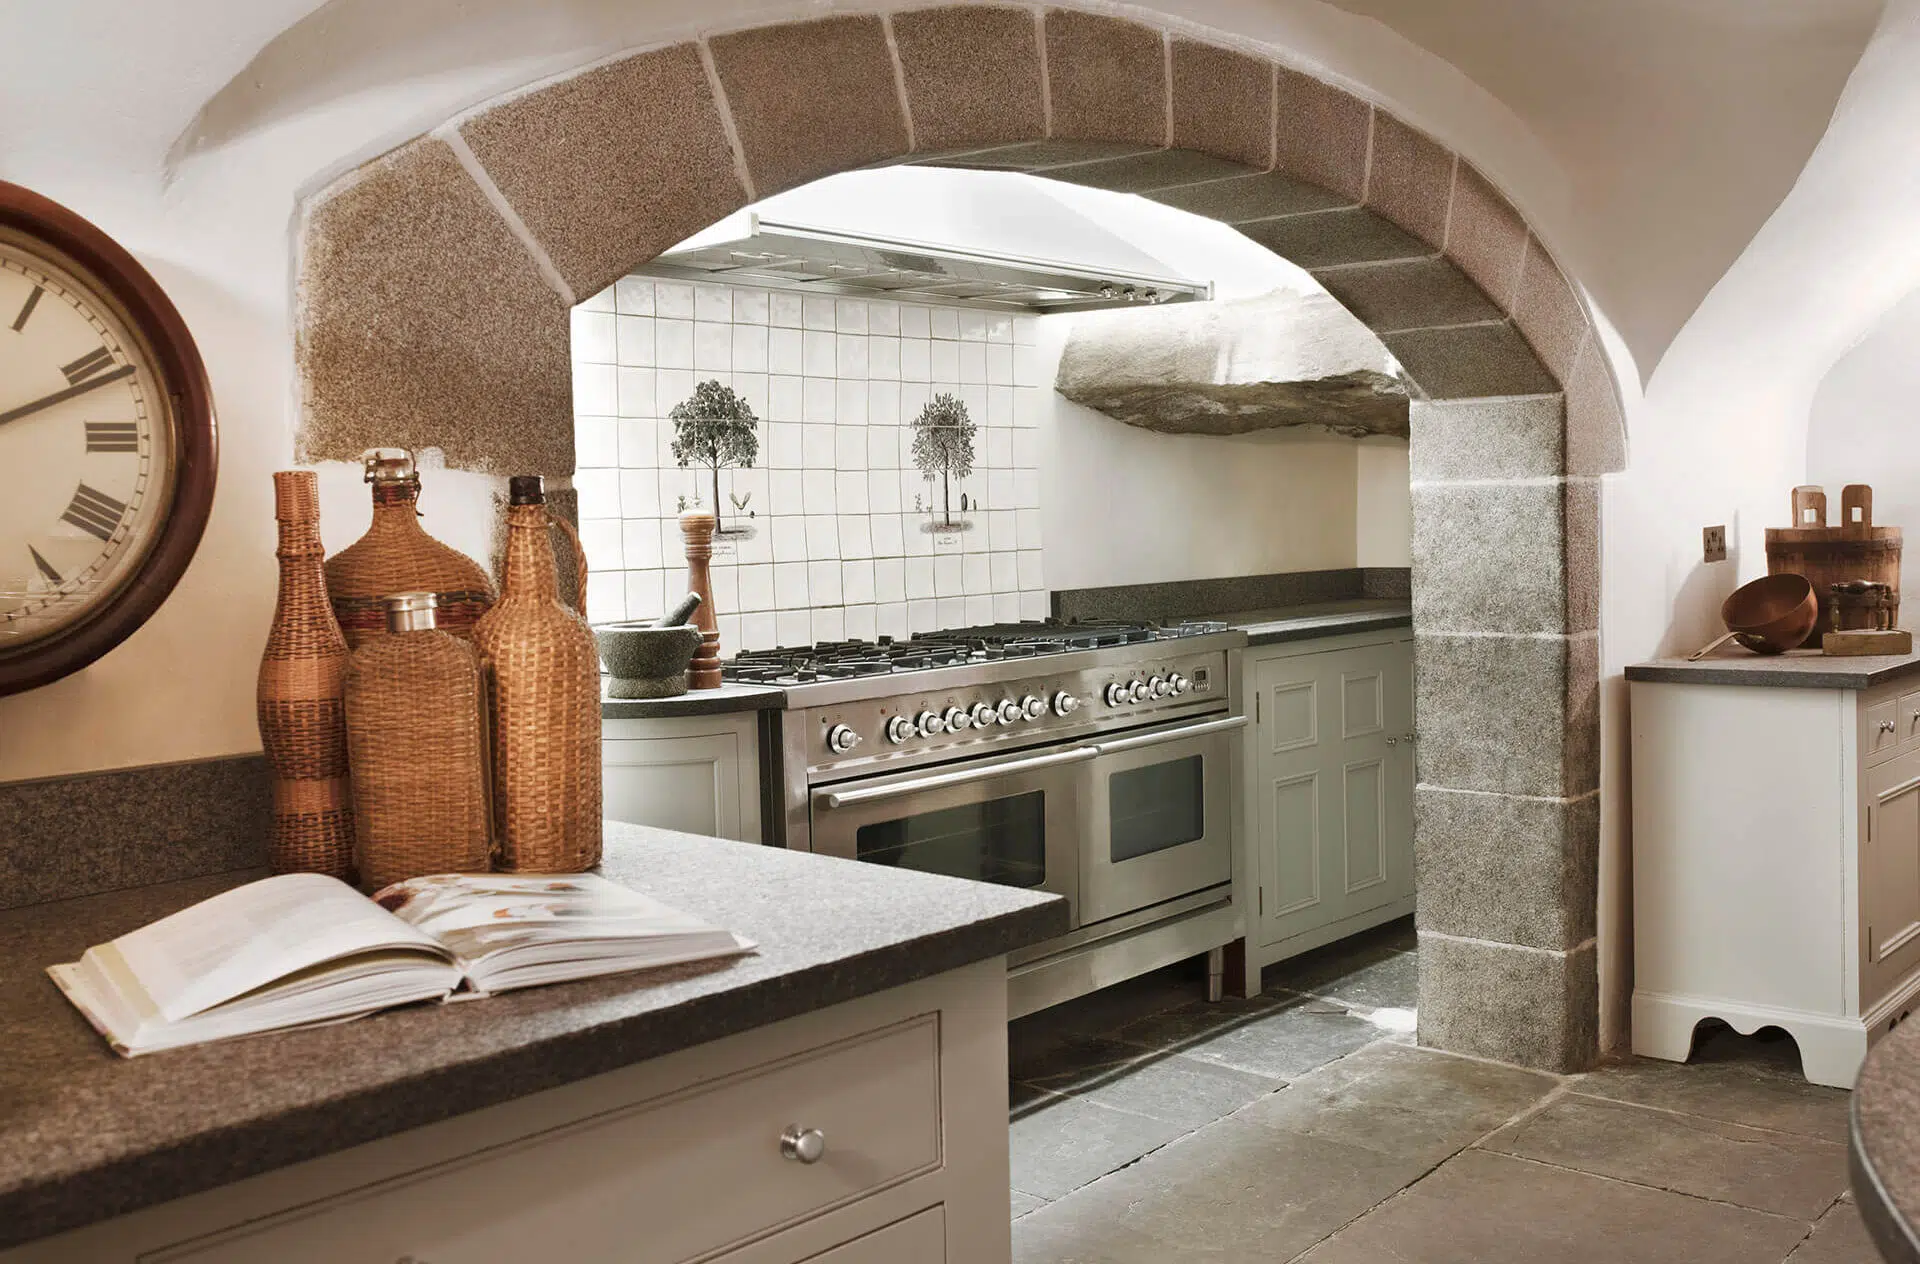 kitchen in scottish castle